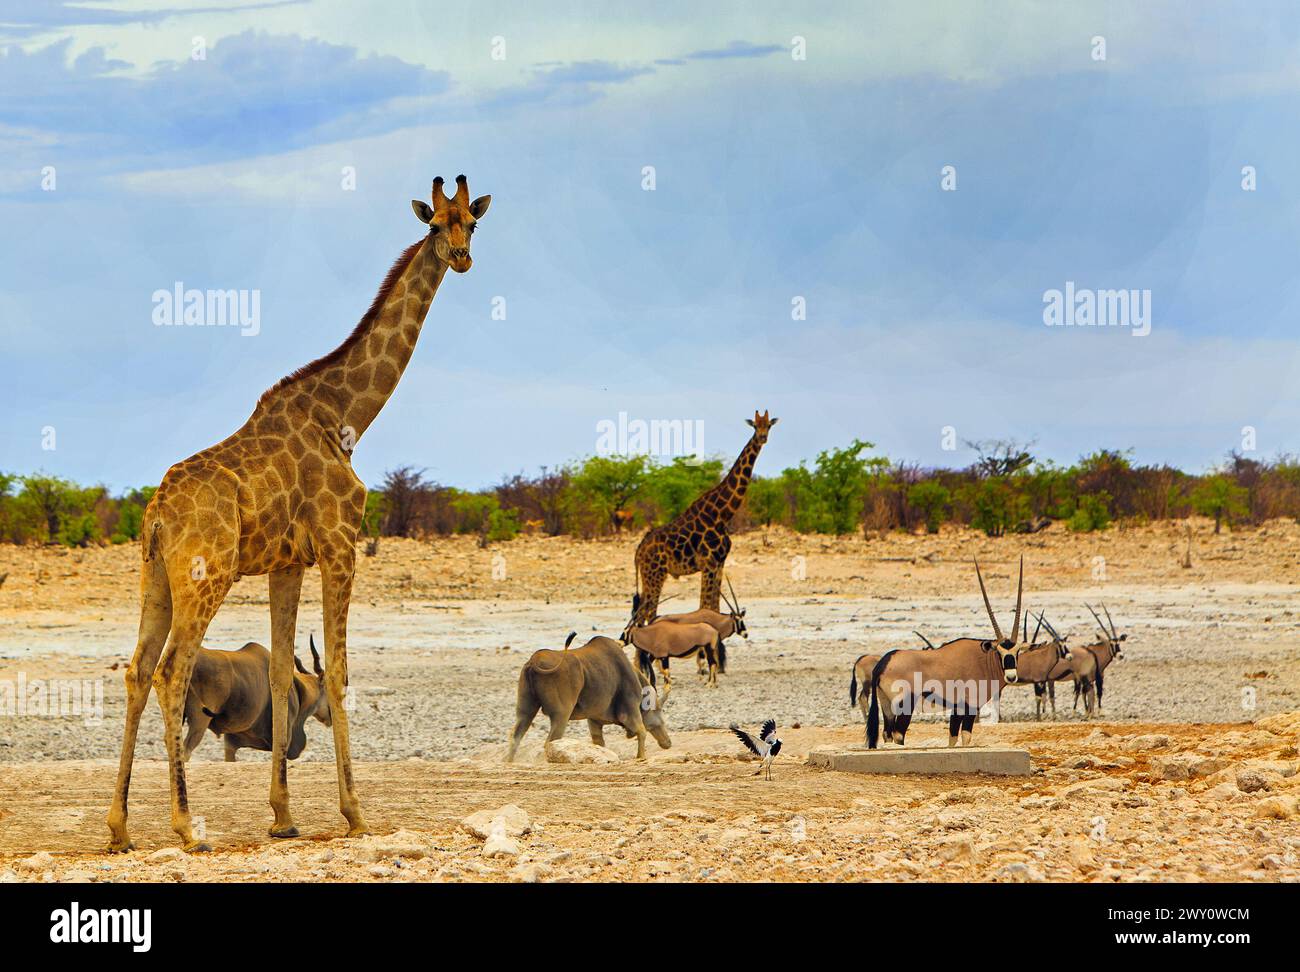 Afrikanische Safari-Szene mit weiten offenen Ebenen und Giraffen, Oryx und Eland, die auf der trockenen Savanne stehen Stockfoto